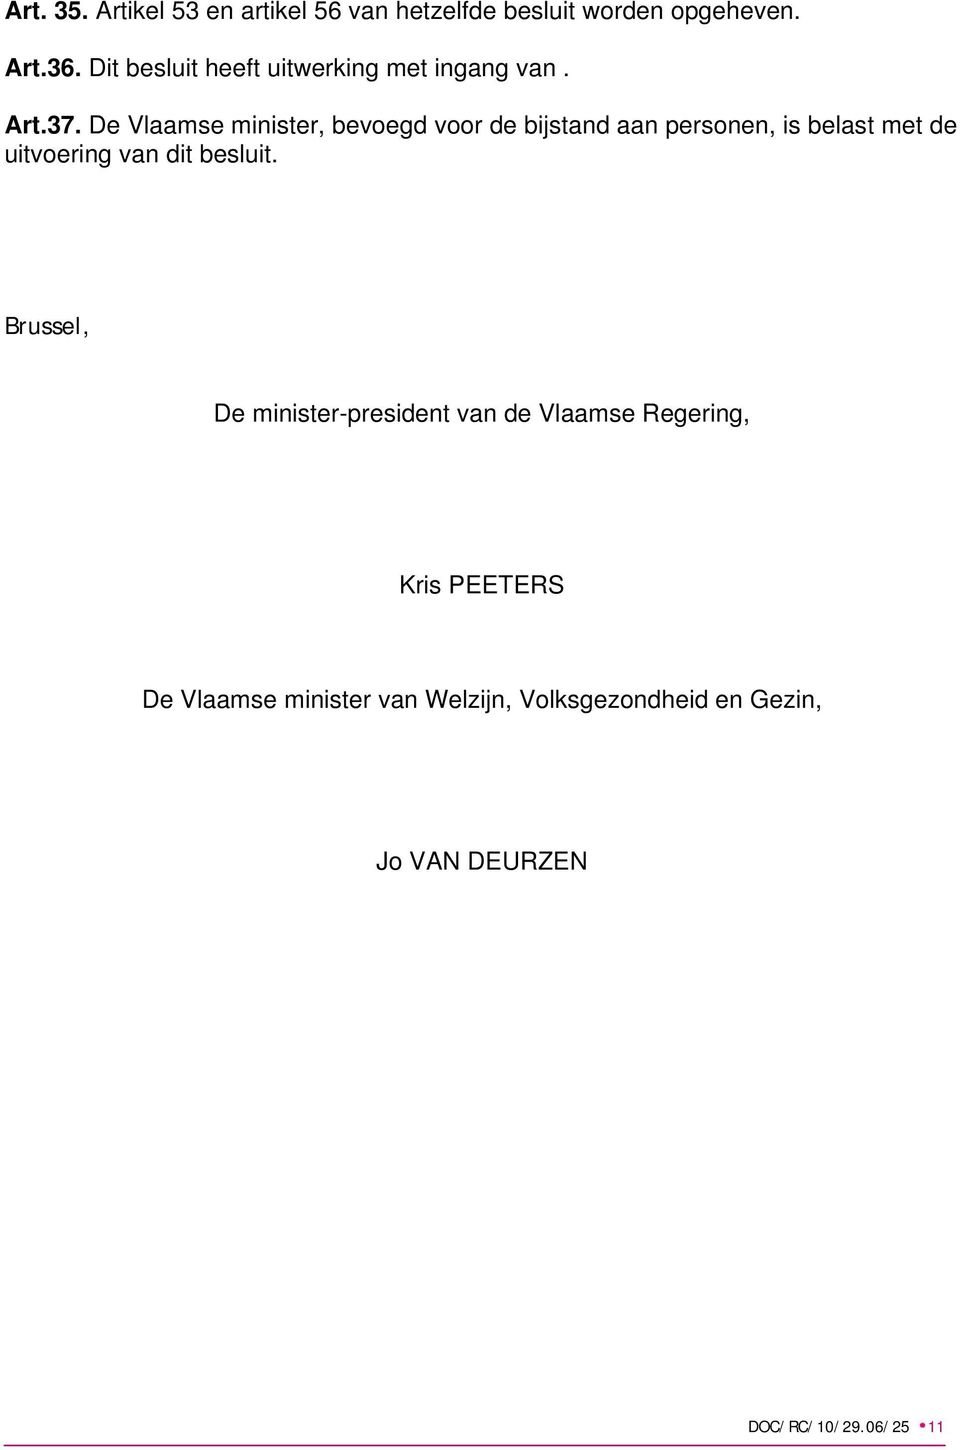 De Vlaamse minister, bevoegd voor de bijstand aan personen, is belast met de uitvoering van dit